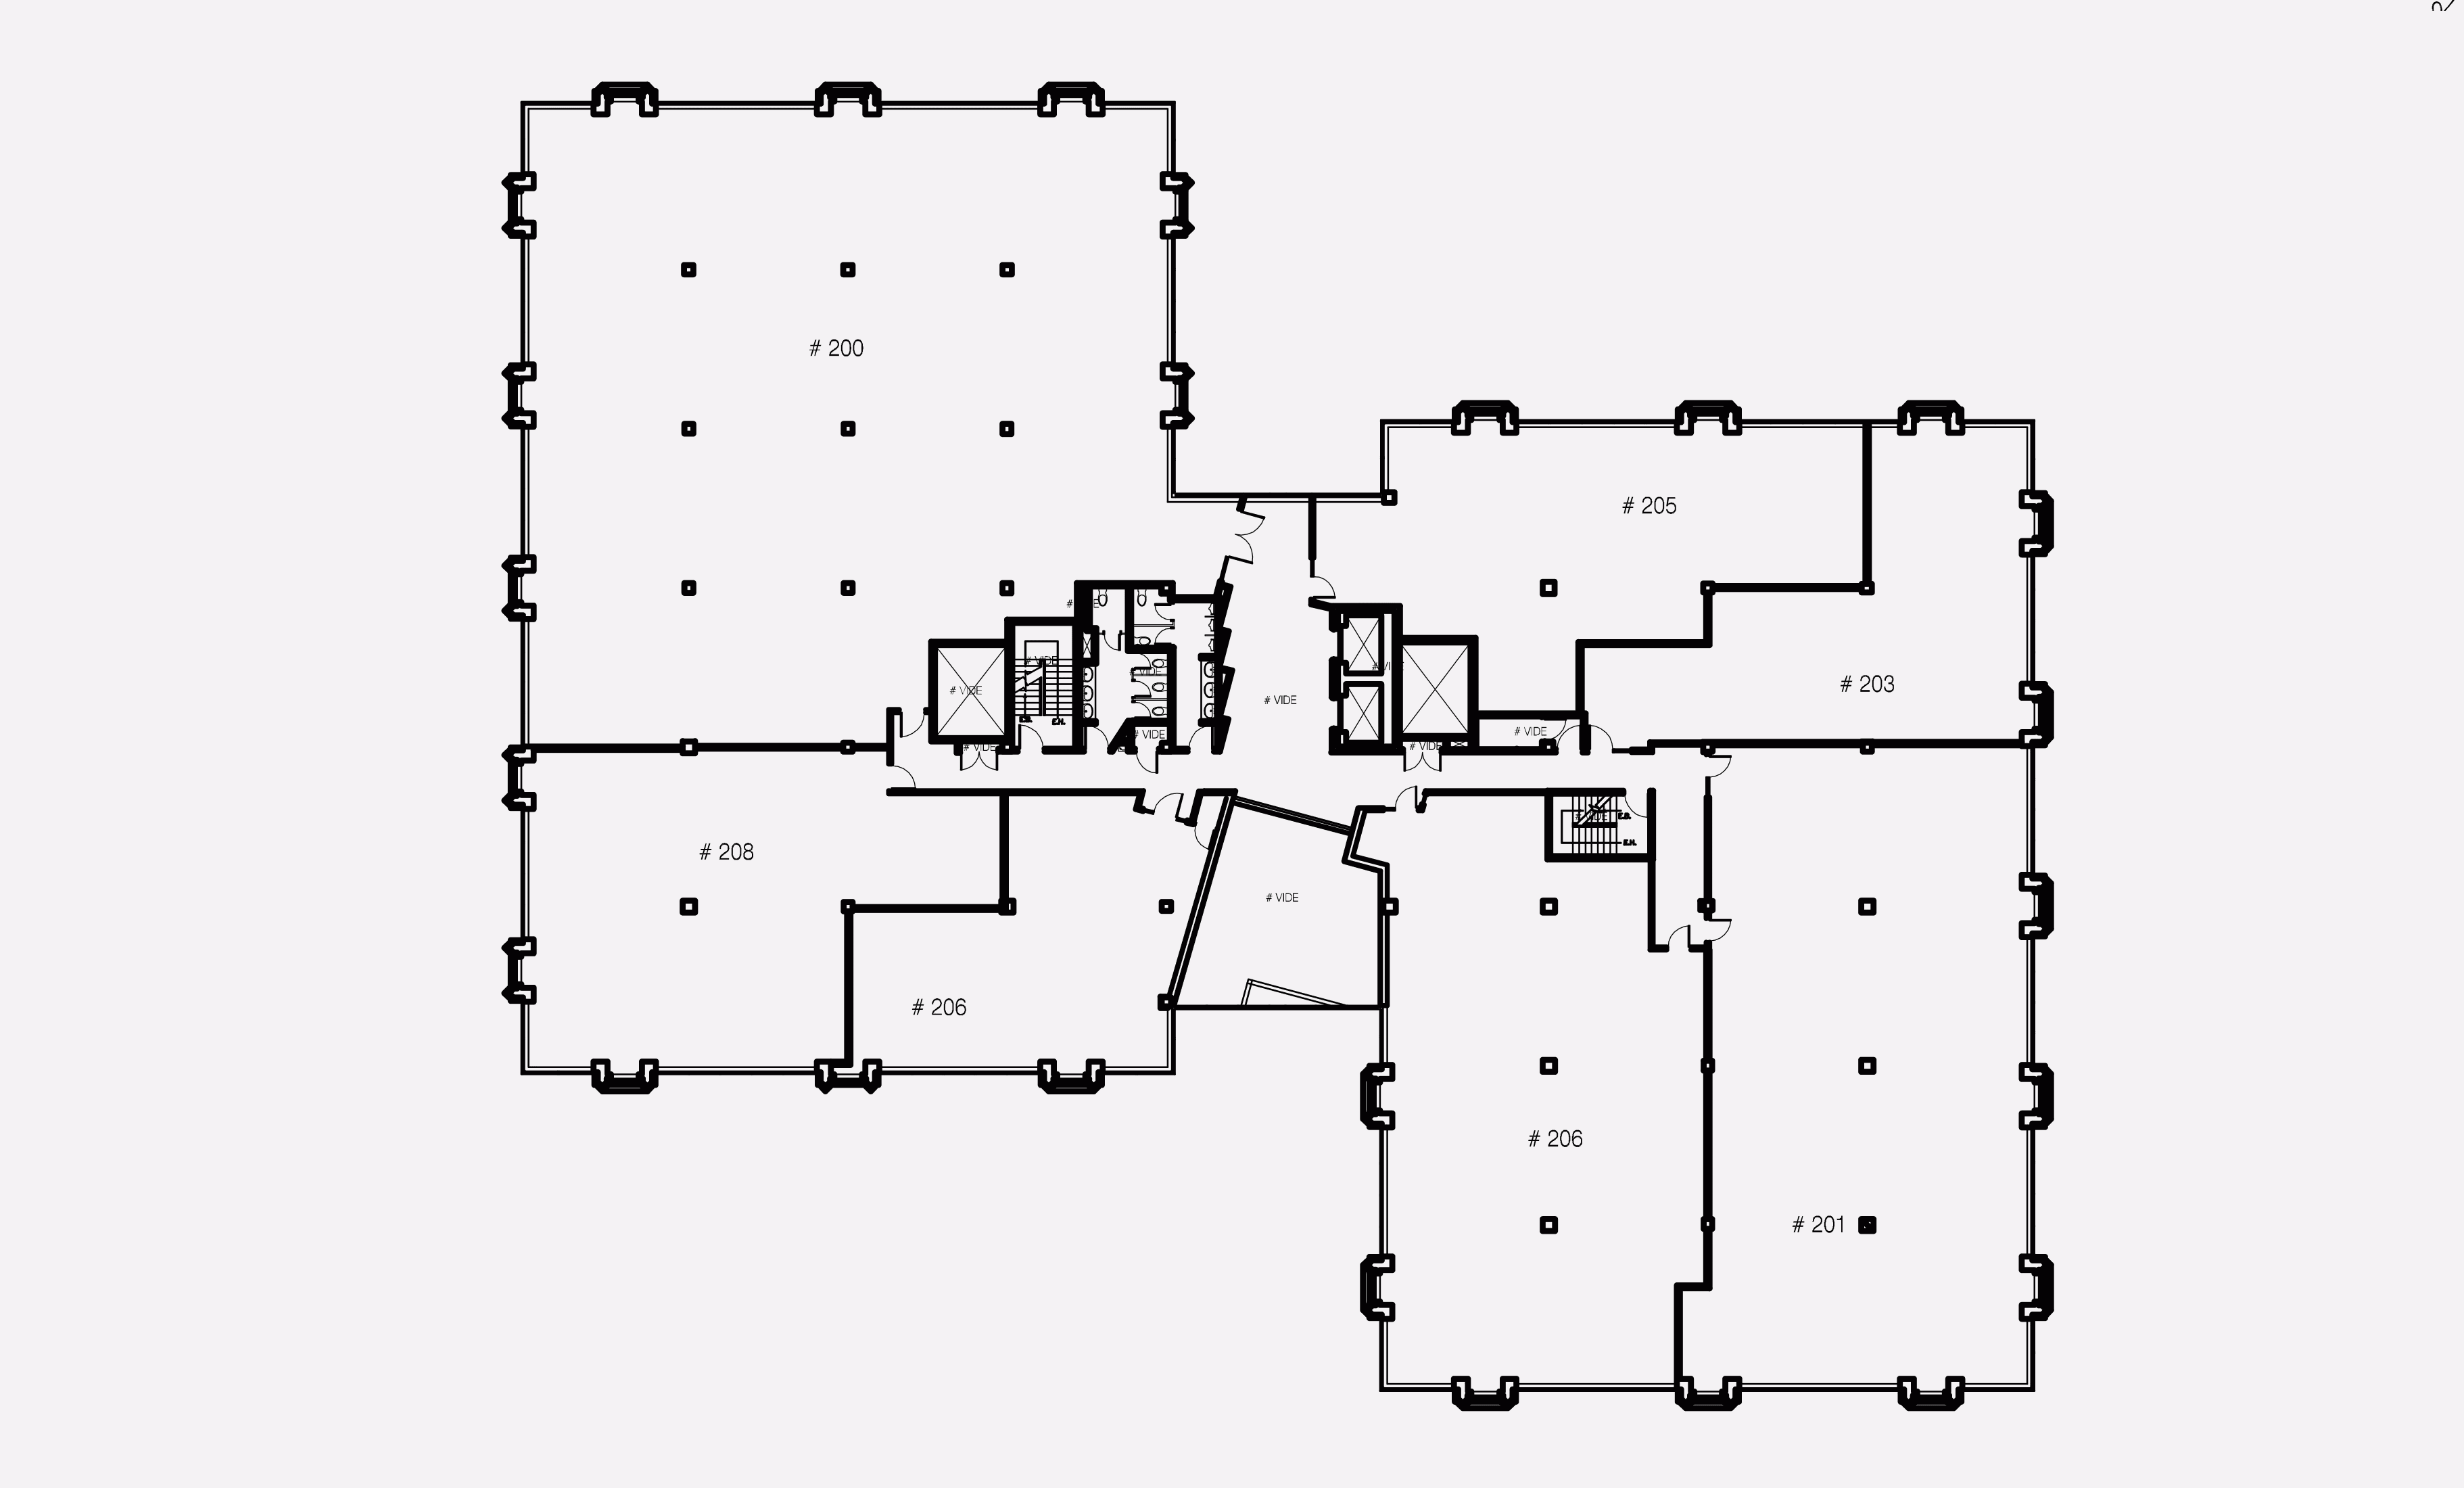 2nd floor - Plan 1